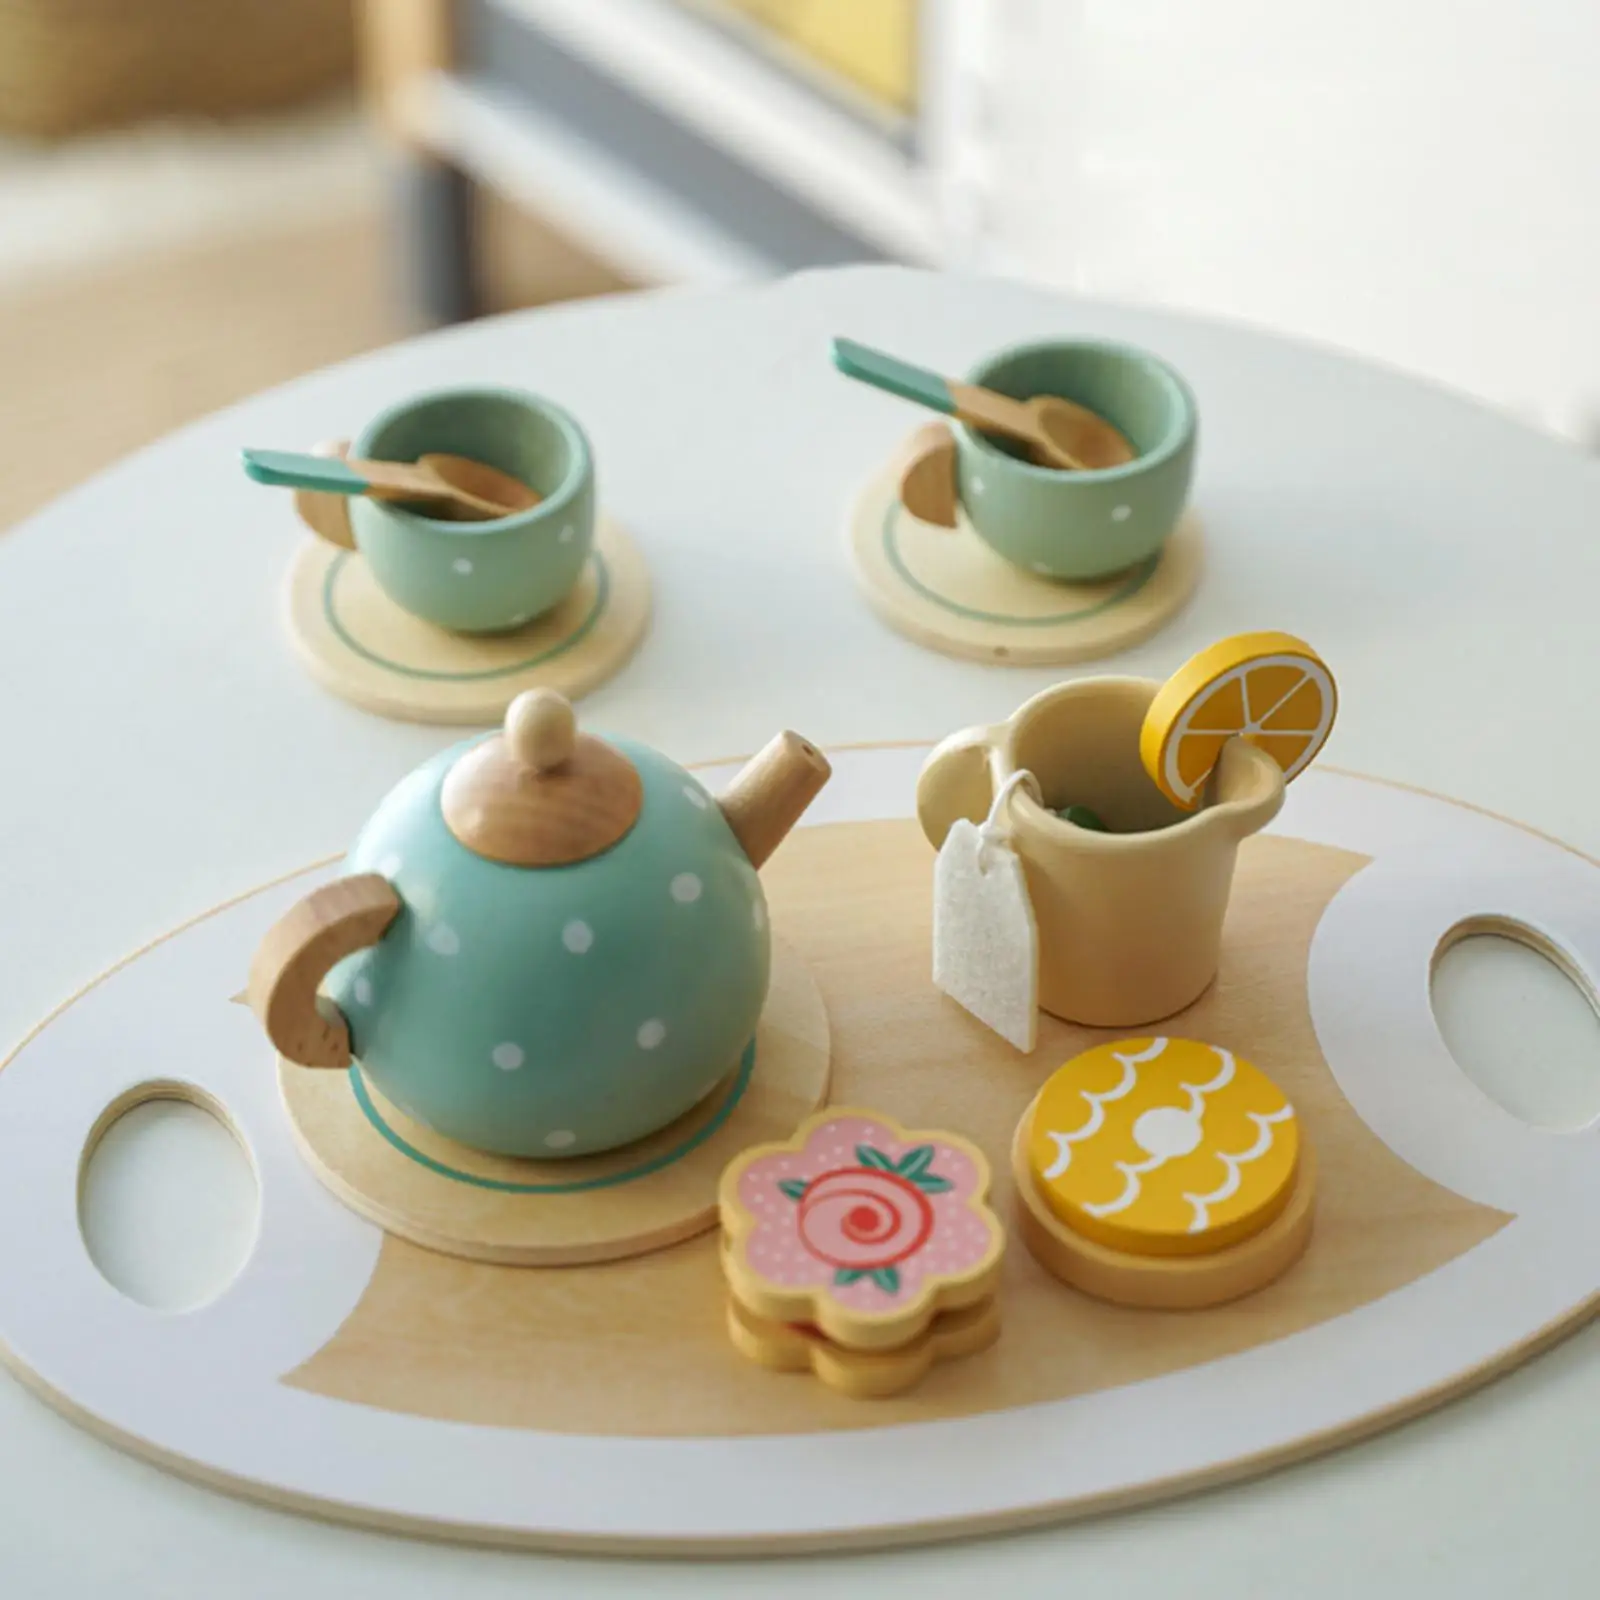 15x Kitchen Tableware Set Kitchen Playset Developmental Toy for Preschool